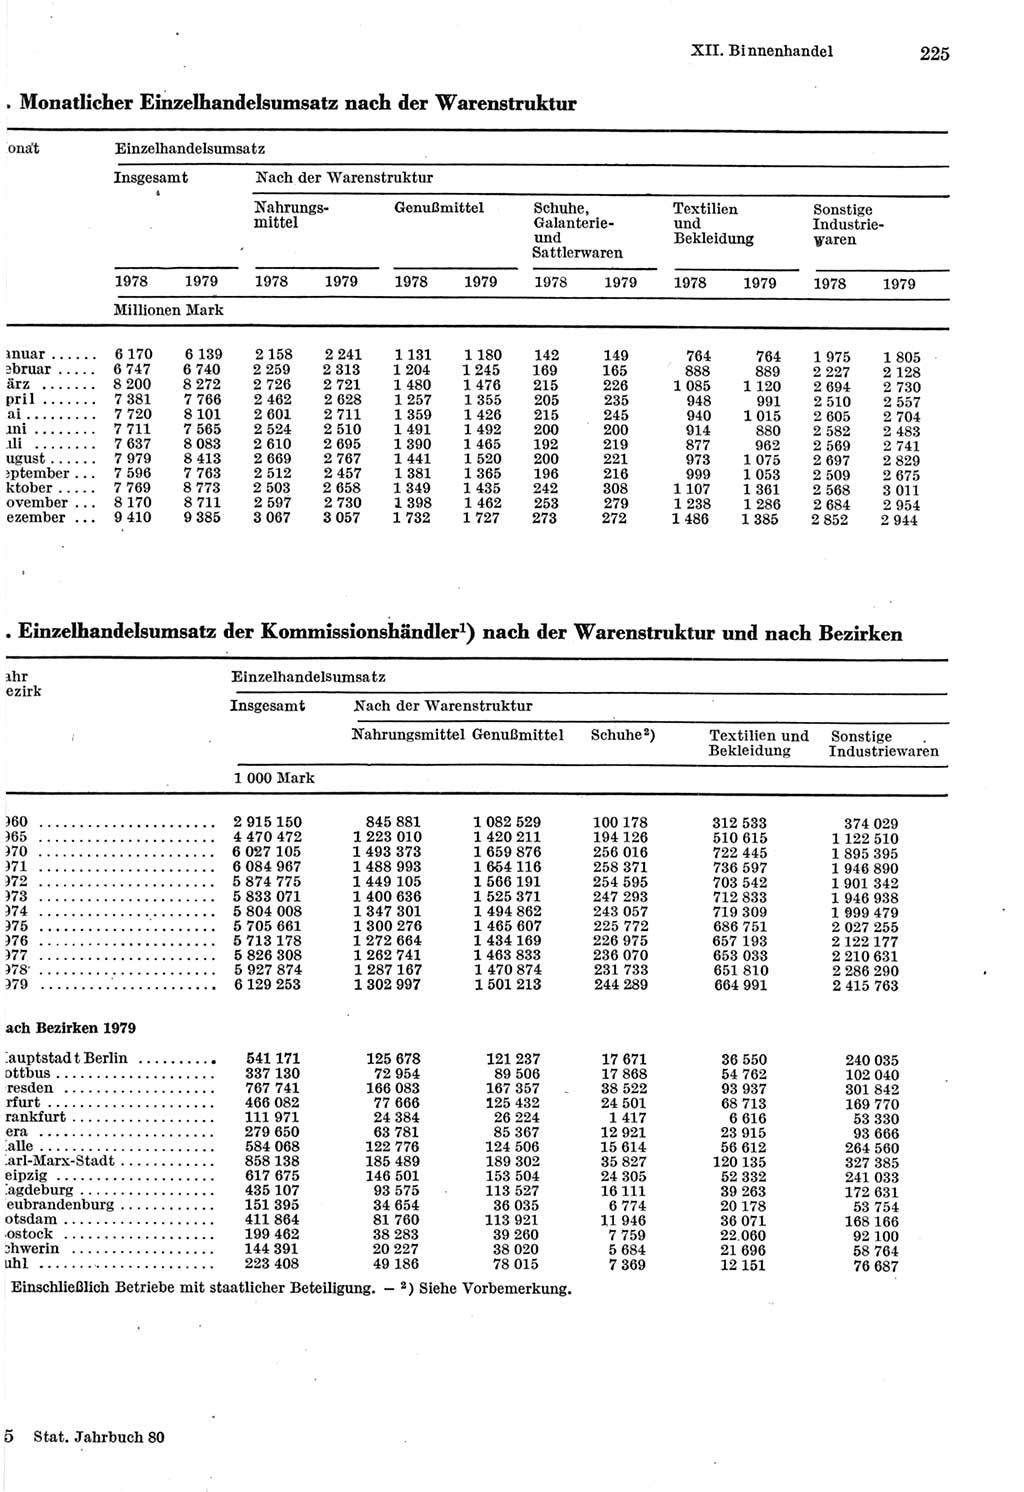 Statistisches Jahrbuch der Deutschen Demokratischen Republik (DDR) 1980, Seite 225 (Stat. Jb. DDR 1980, S. 225)